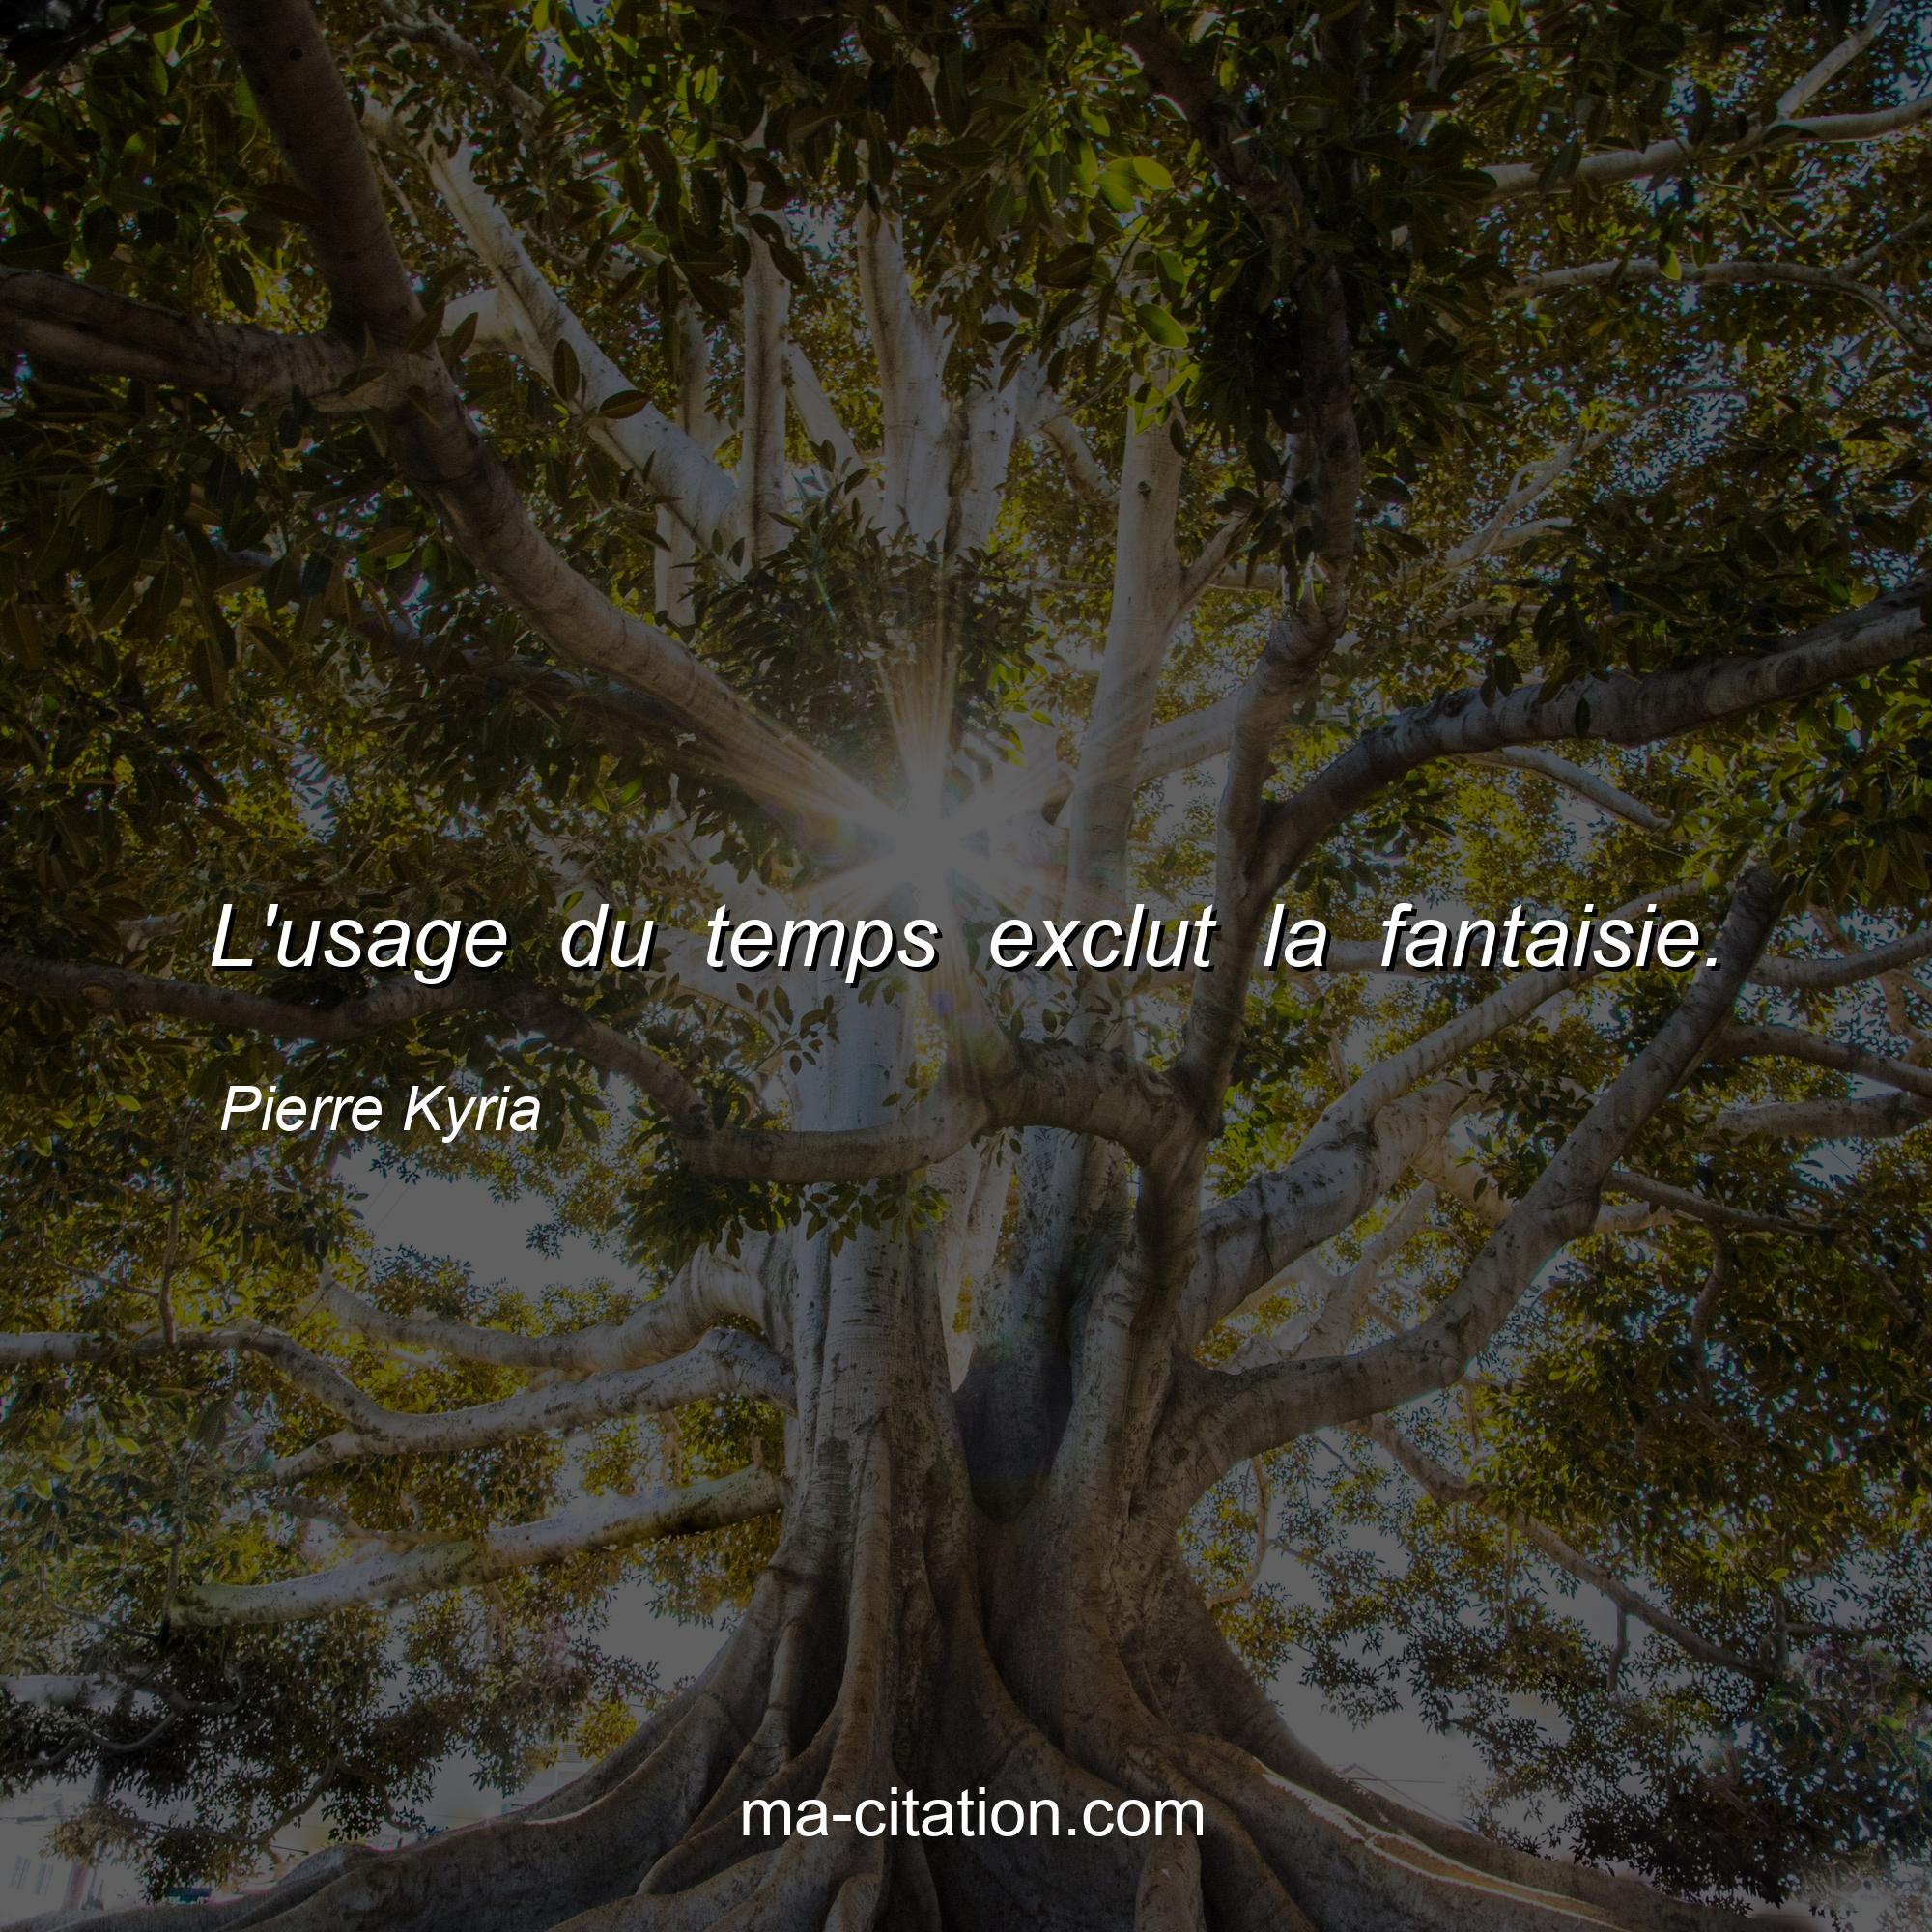 Pierre Kyria : L'usage du temps exclut la fantaisie.